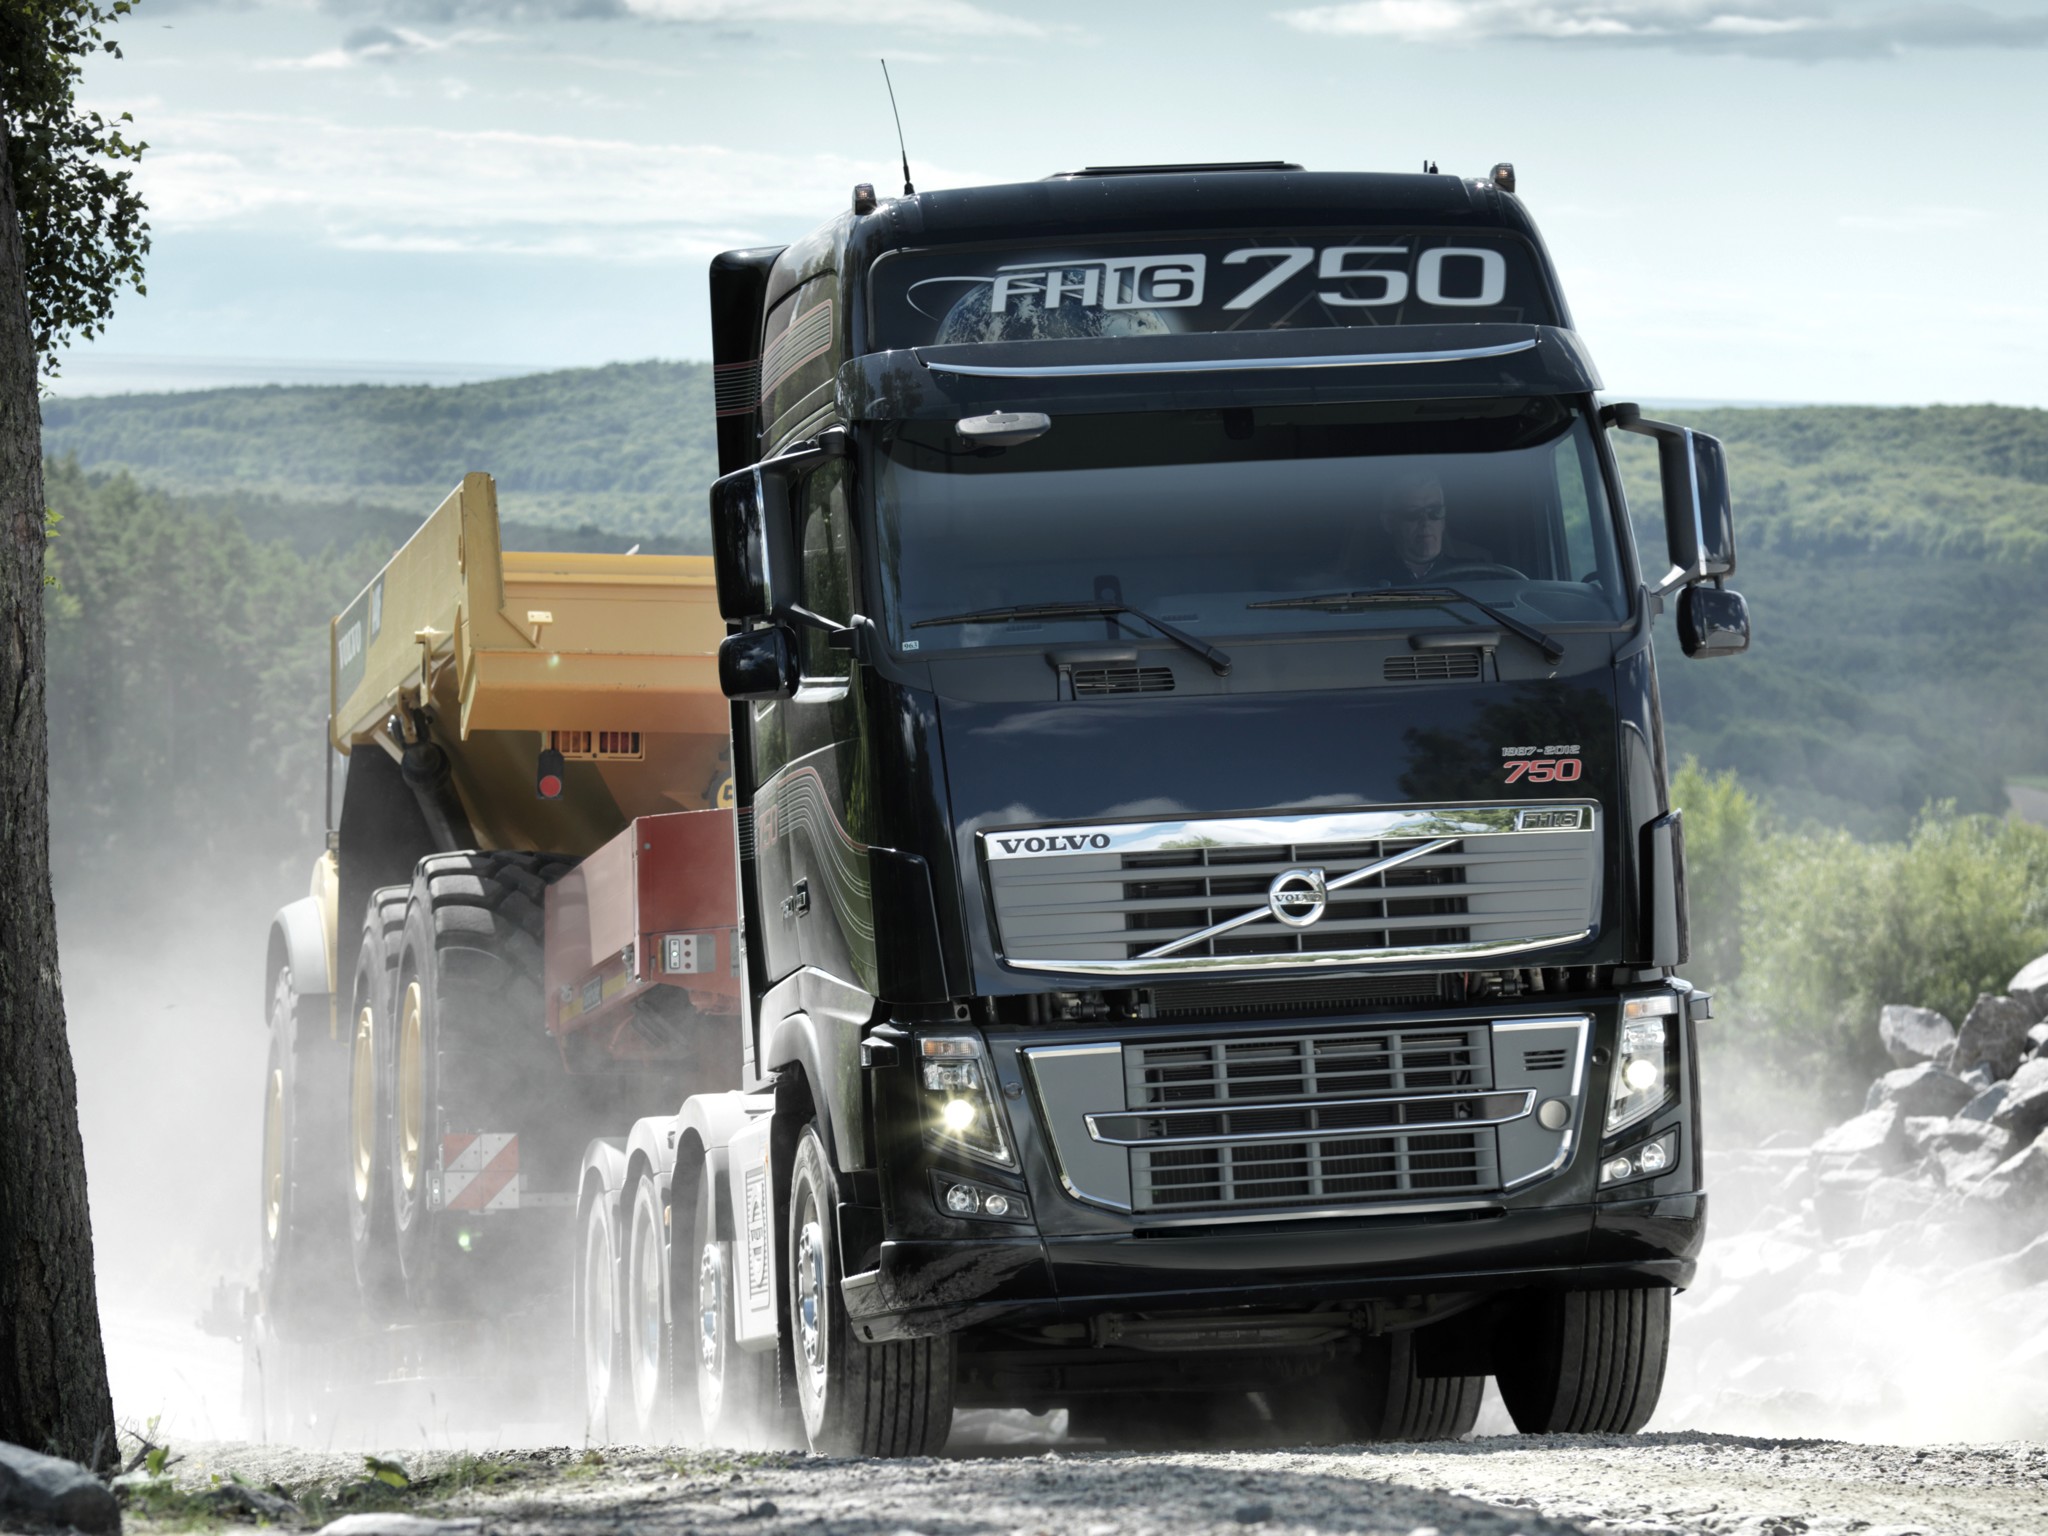 2011, Volvo, Fh16, 750, 8x4, Tractor, Semi, Rig Wallpaper